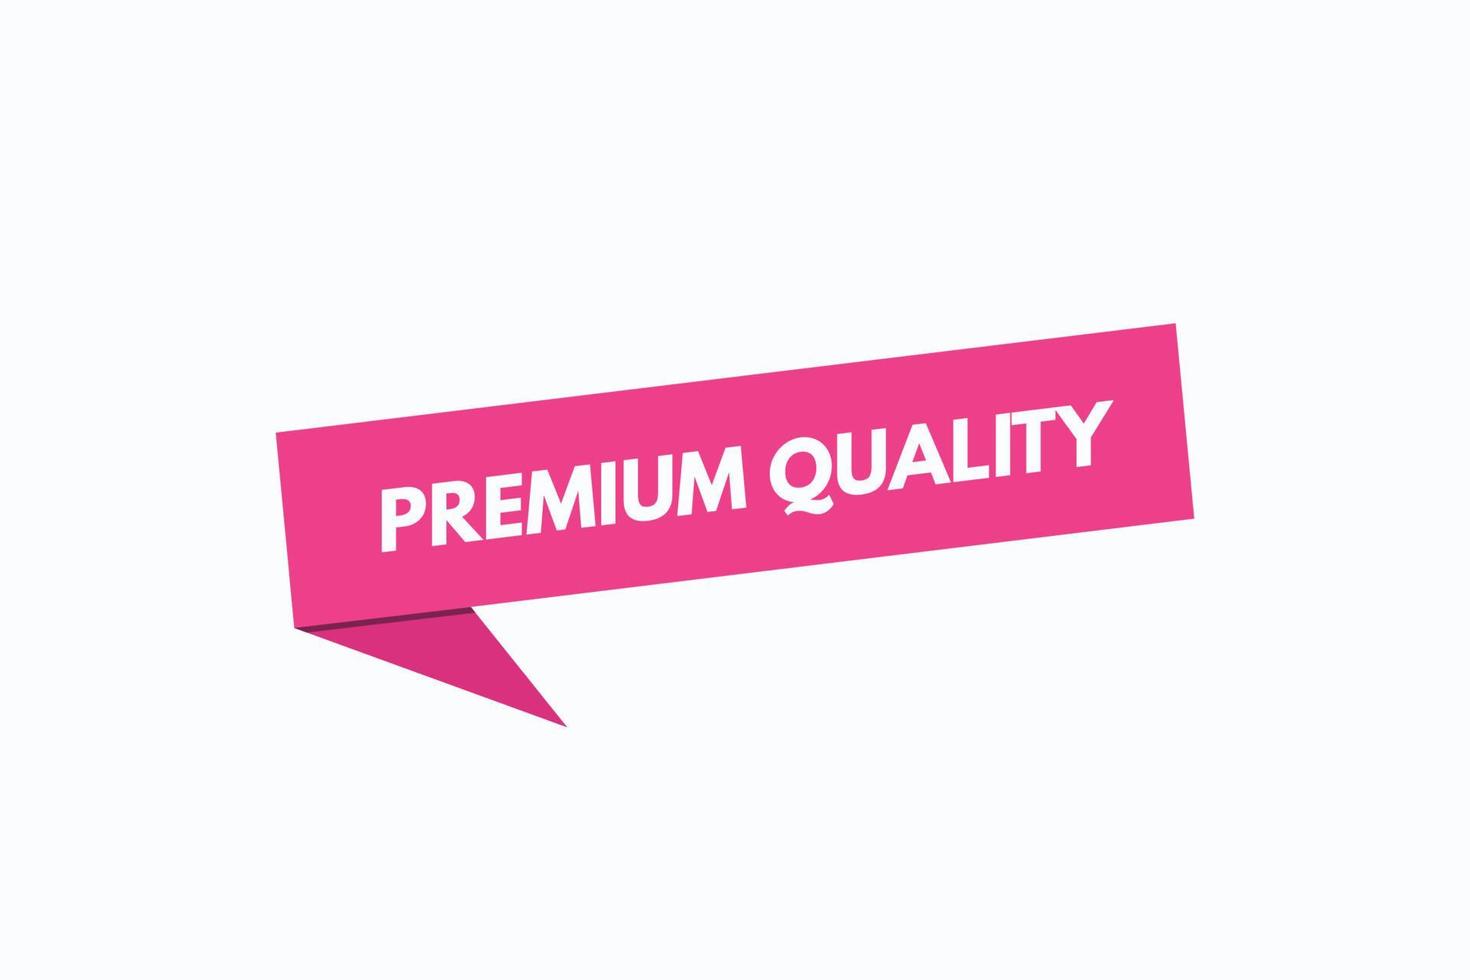 grundlegende rgbpremium-Qualitätsschaltfläche vectors.sign-Label-Sprechblase Premium-Qualität vektor